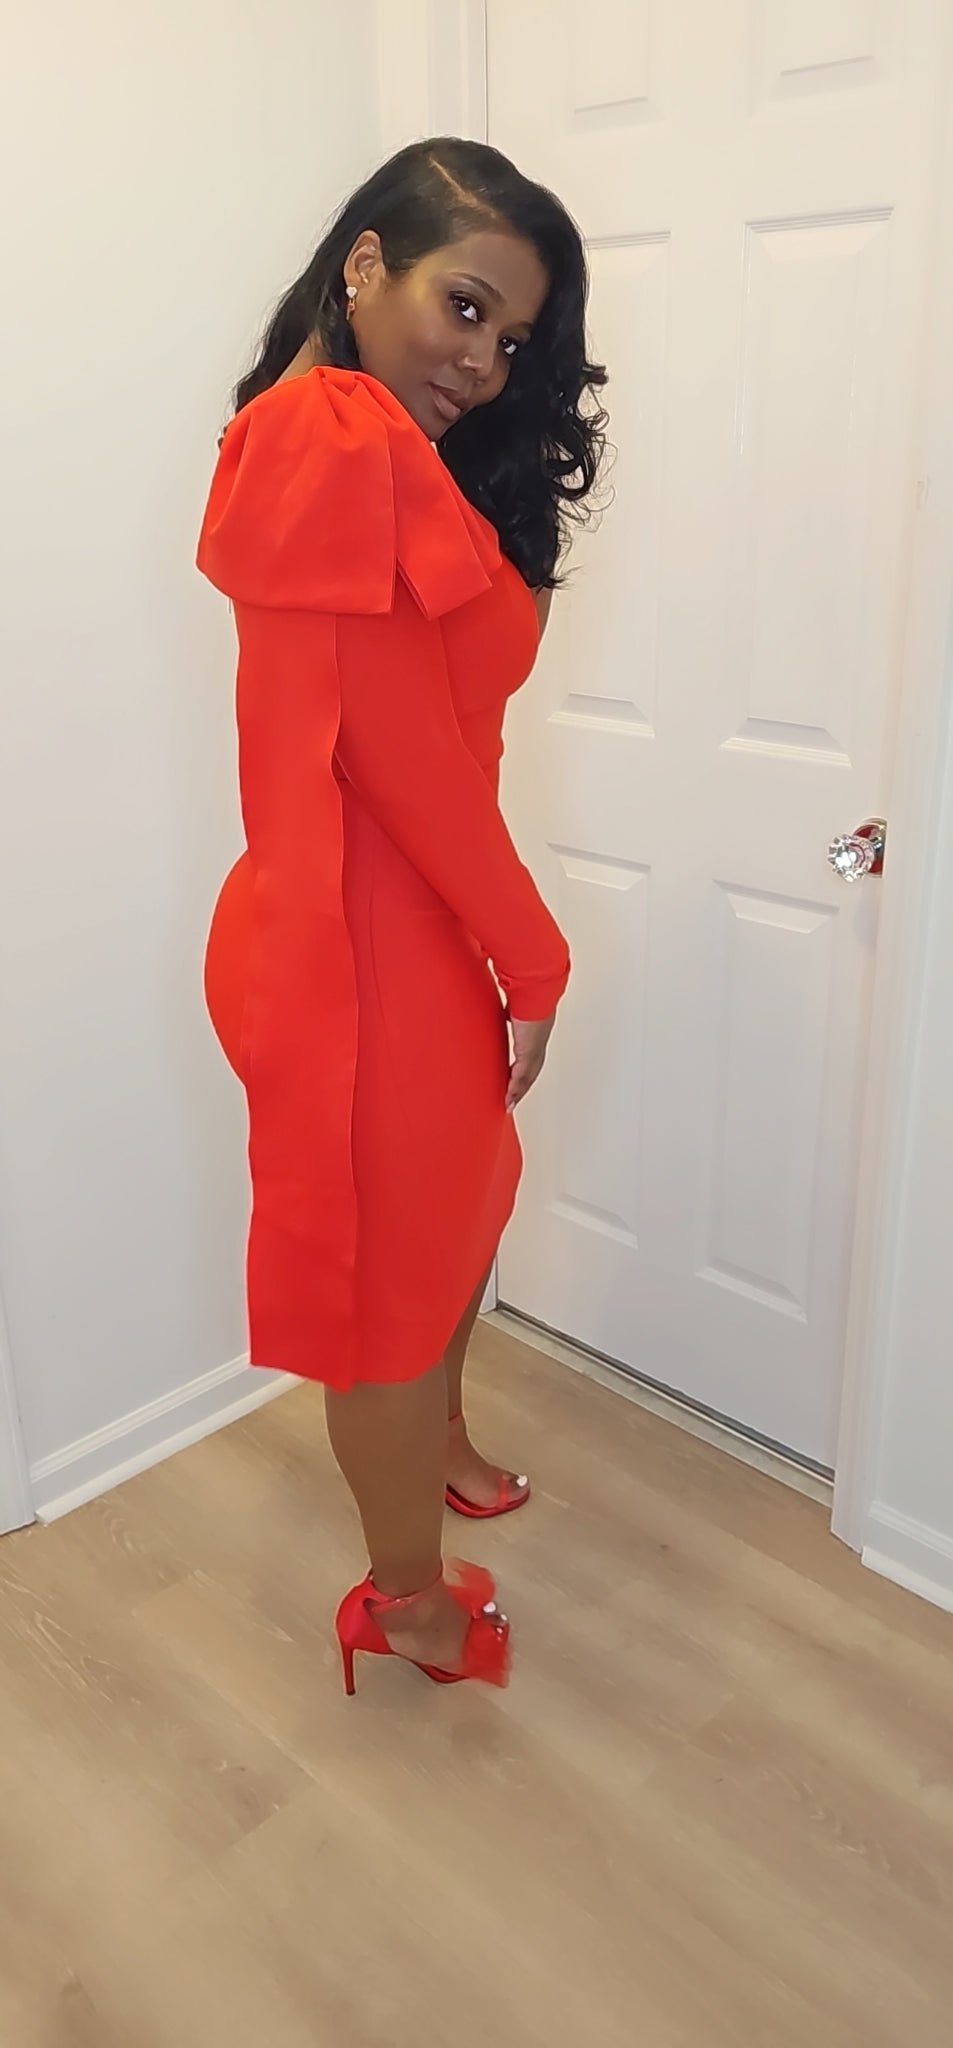 Baddie in Red dress